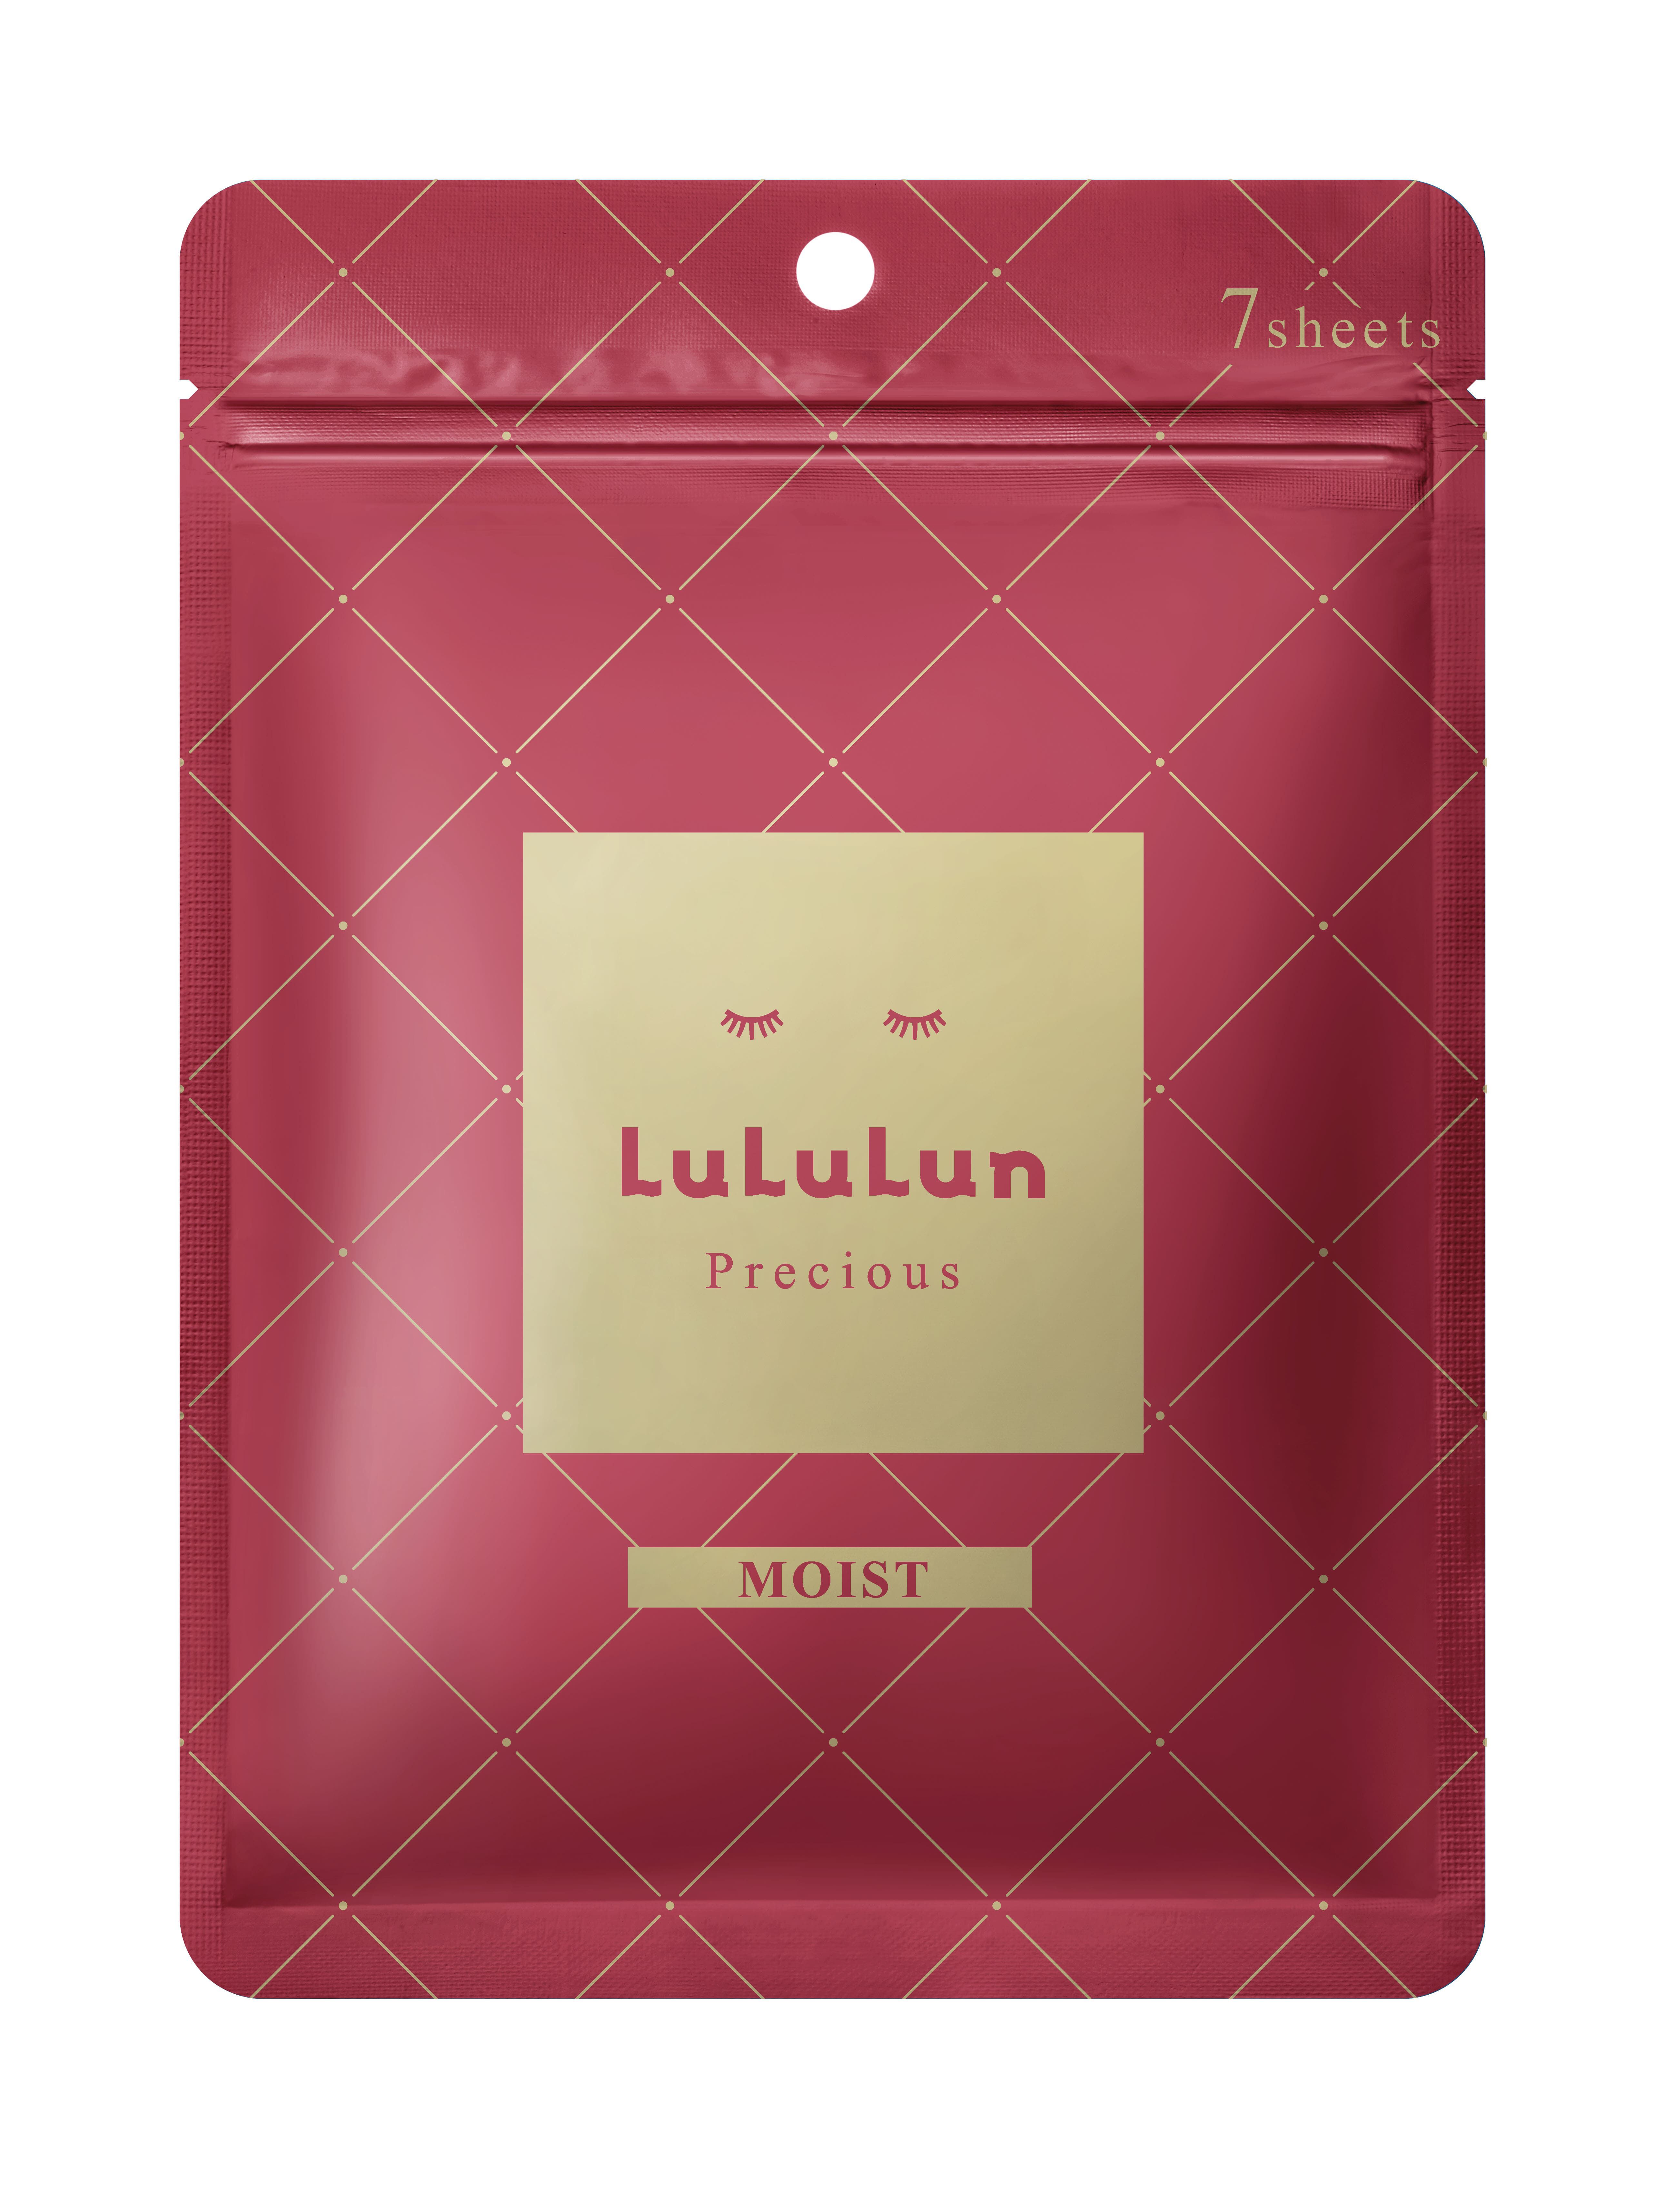 Маска для лица Lululun Precious, 7 шт/1 упаковка lululun precious косметическая тканевая маска для лица белая 1 шт